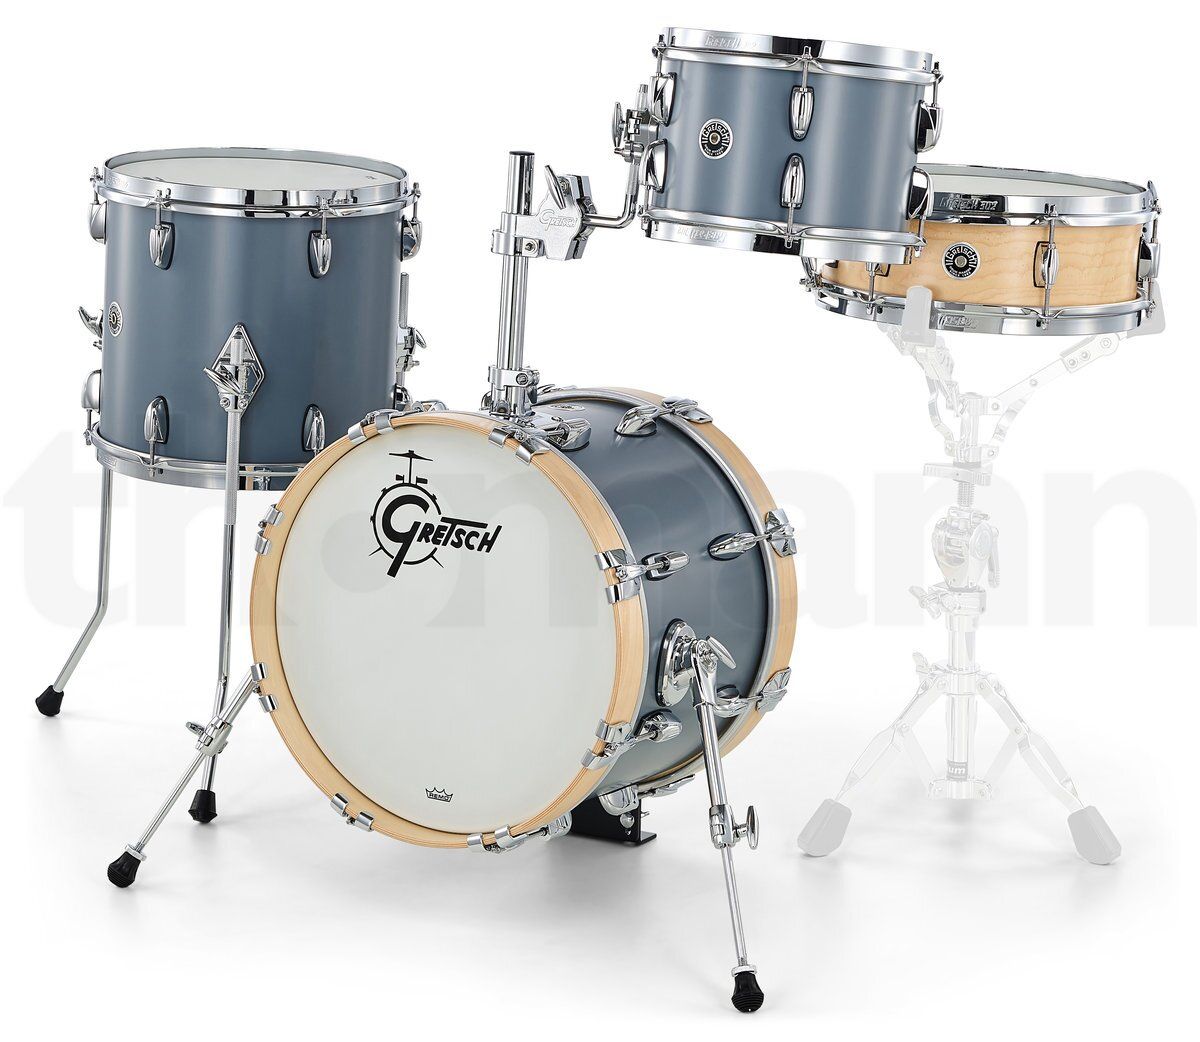 Gretsch Jazz Drum Set. Микро барабан. Комплектующие для барабанов Gretsch. Micro Drum Kit. Drum uk